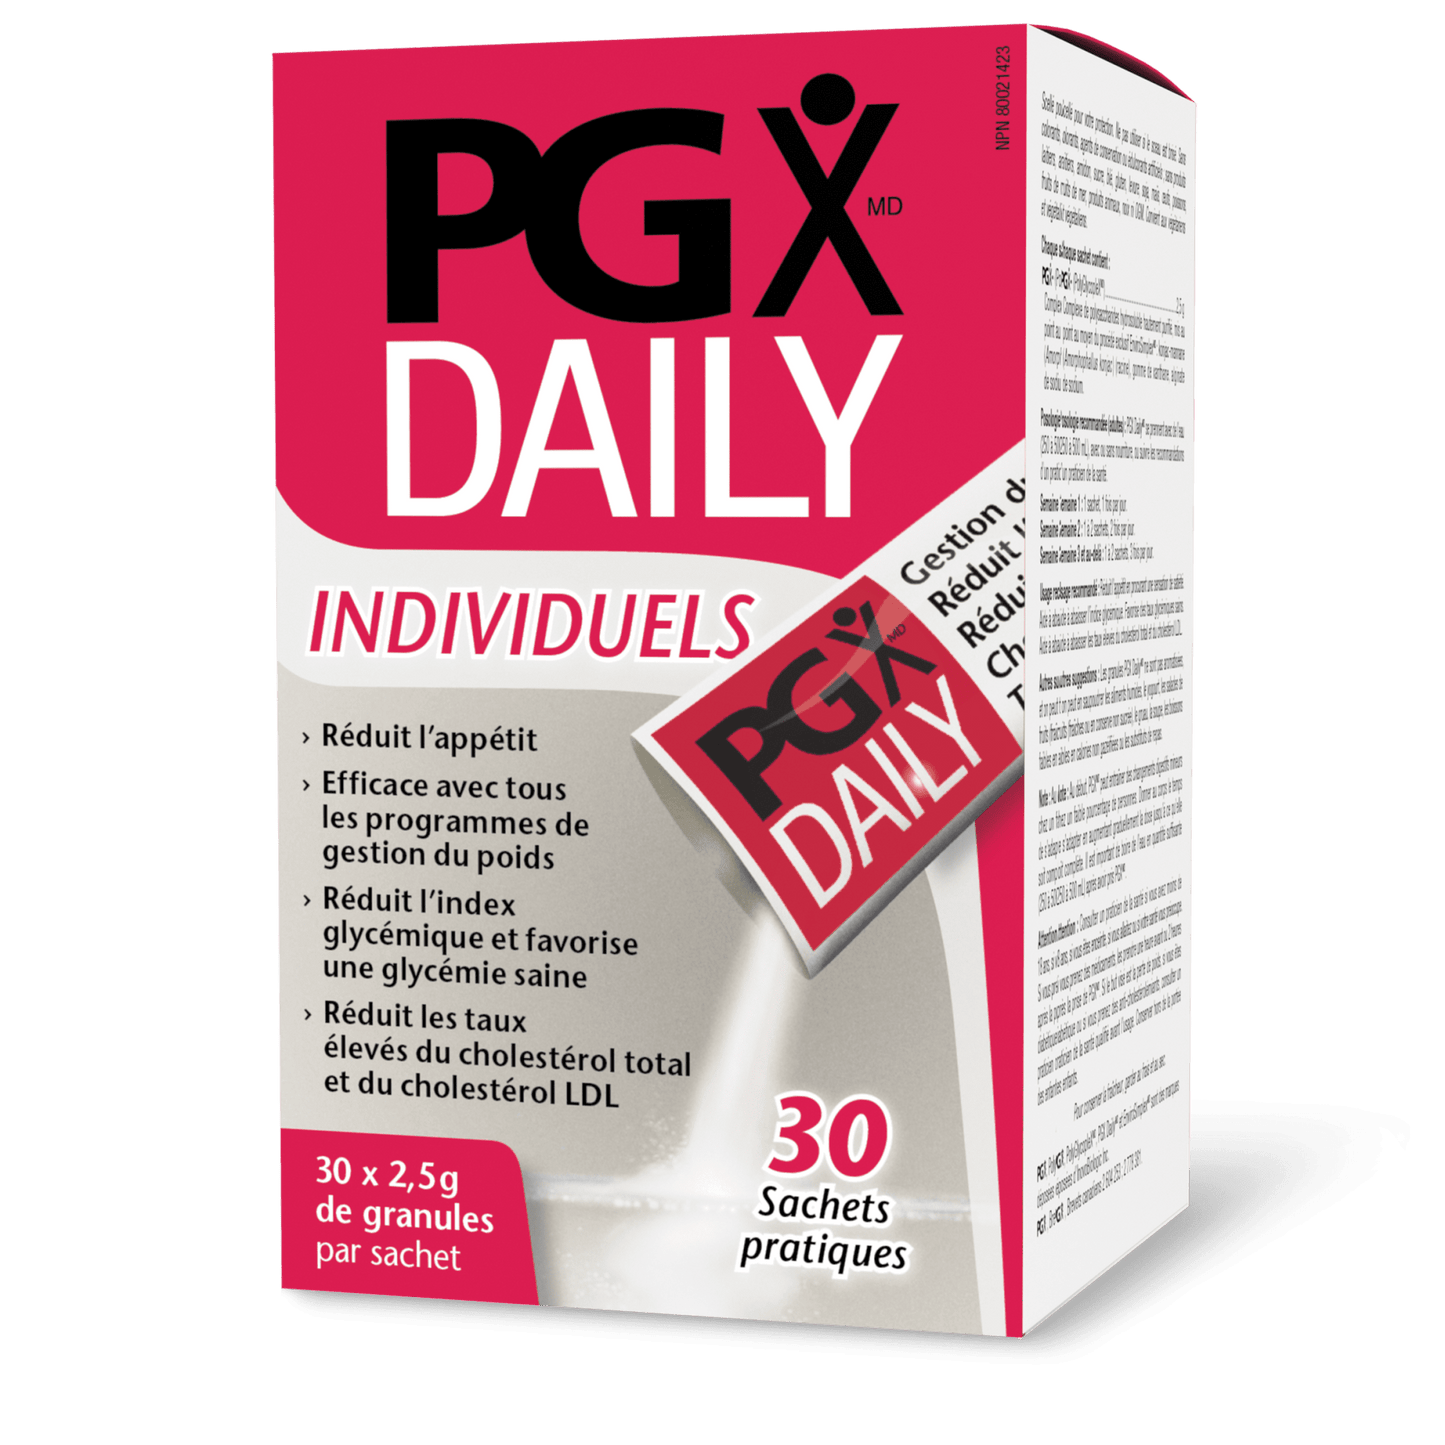 PGX Daily Individuels, Natural Factors|v|image|3570